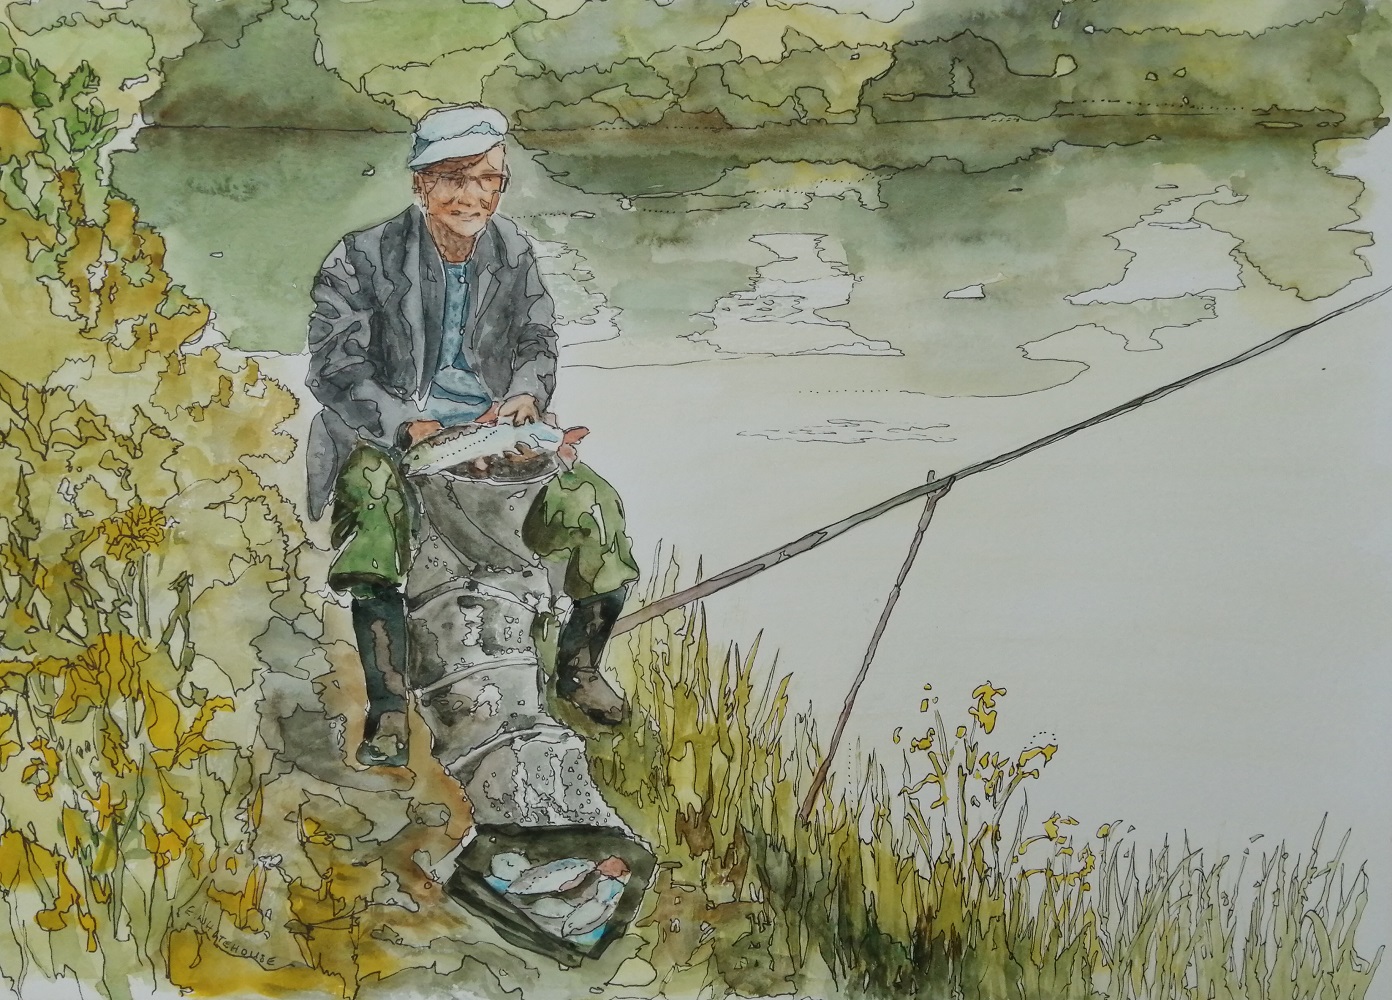 Prize Fisherman